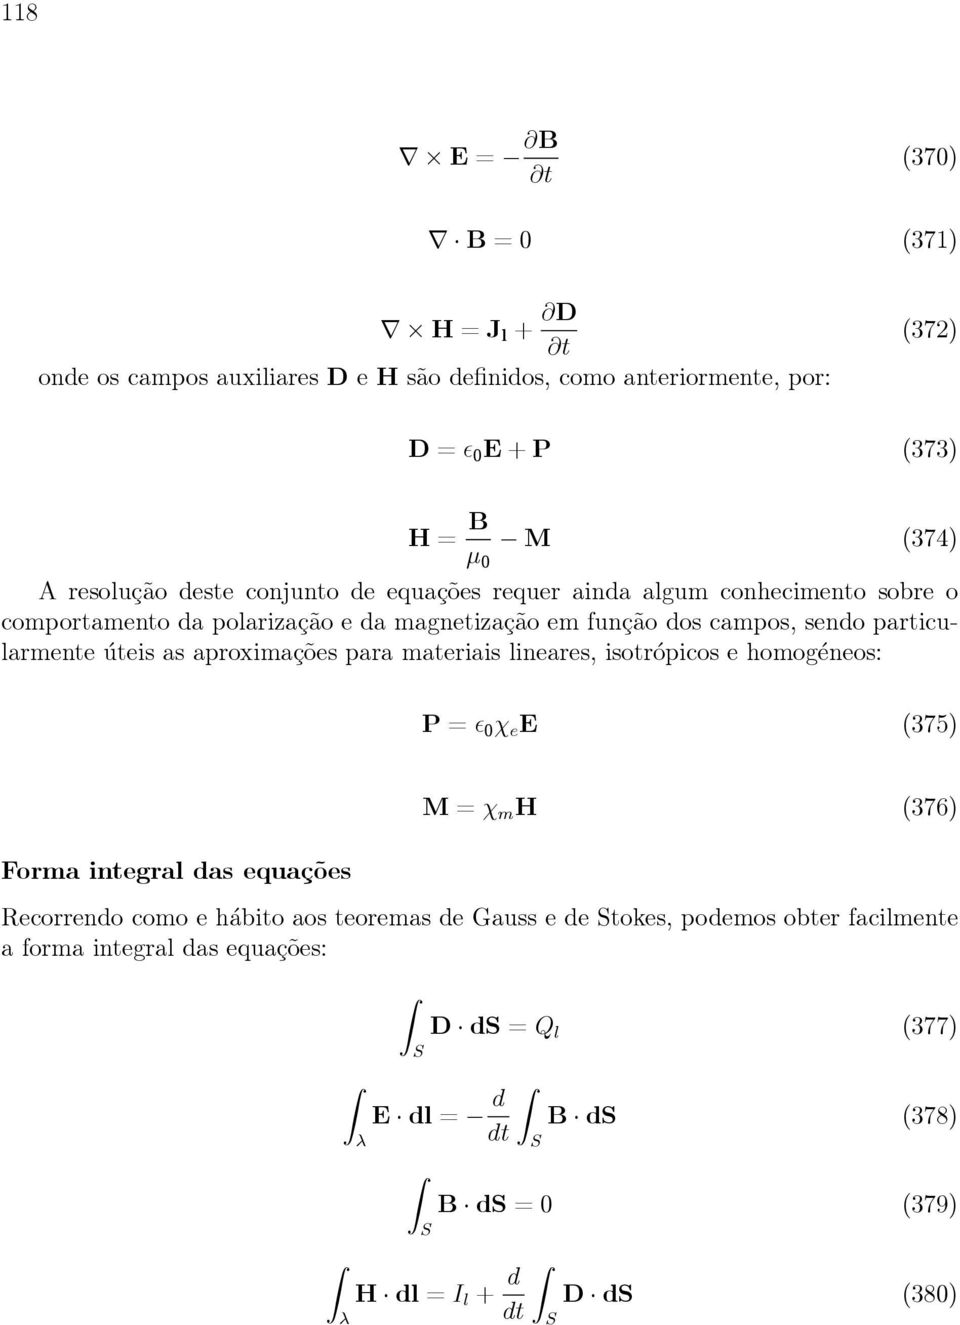 úteis as aproximações para materiais lineares, isotrópicos e homogéneos: P=ɛ 0 χ e E (375) Forma integral das equações M=χ m H (376) Recorrendo como e hábito aos